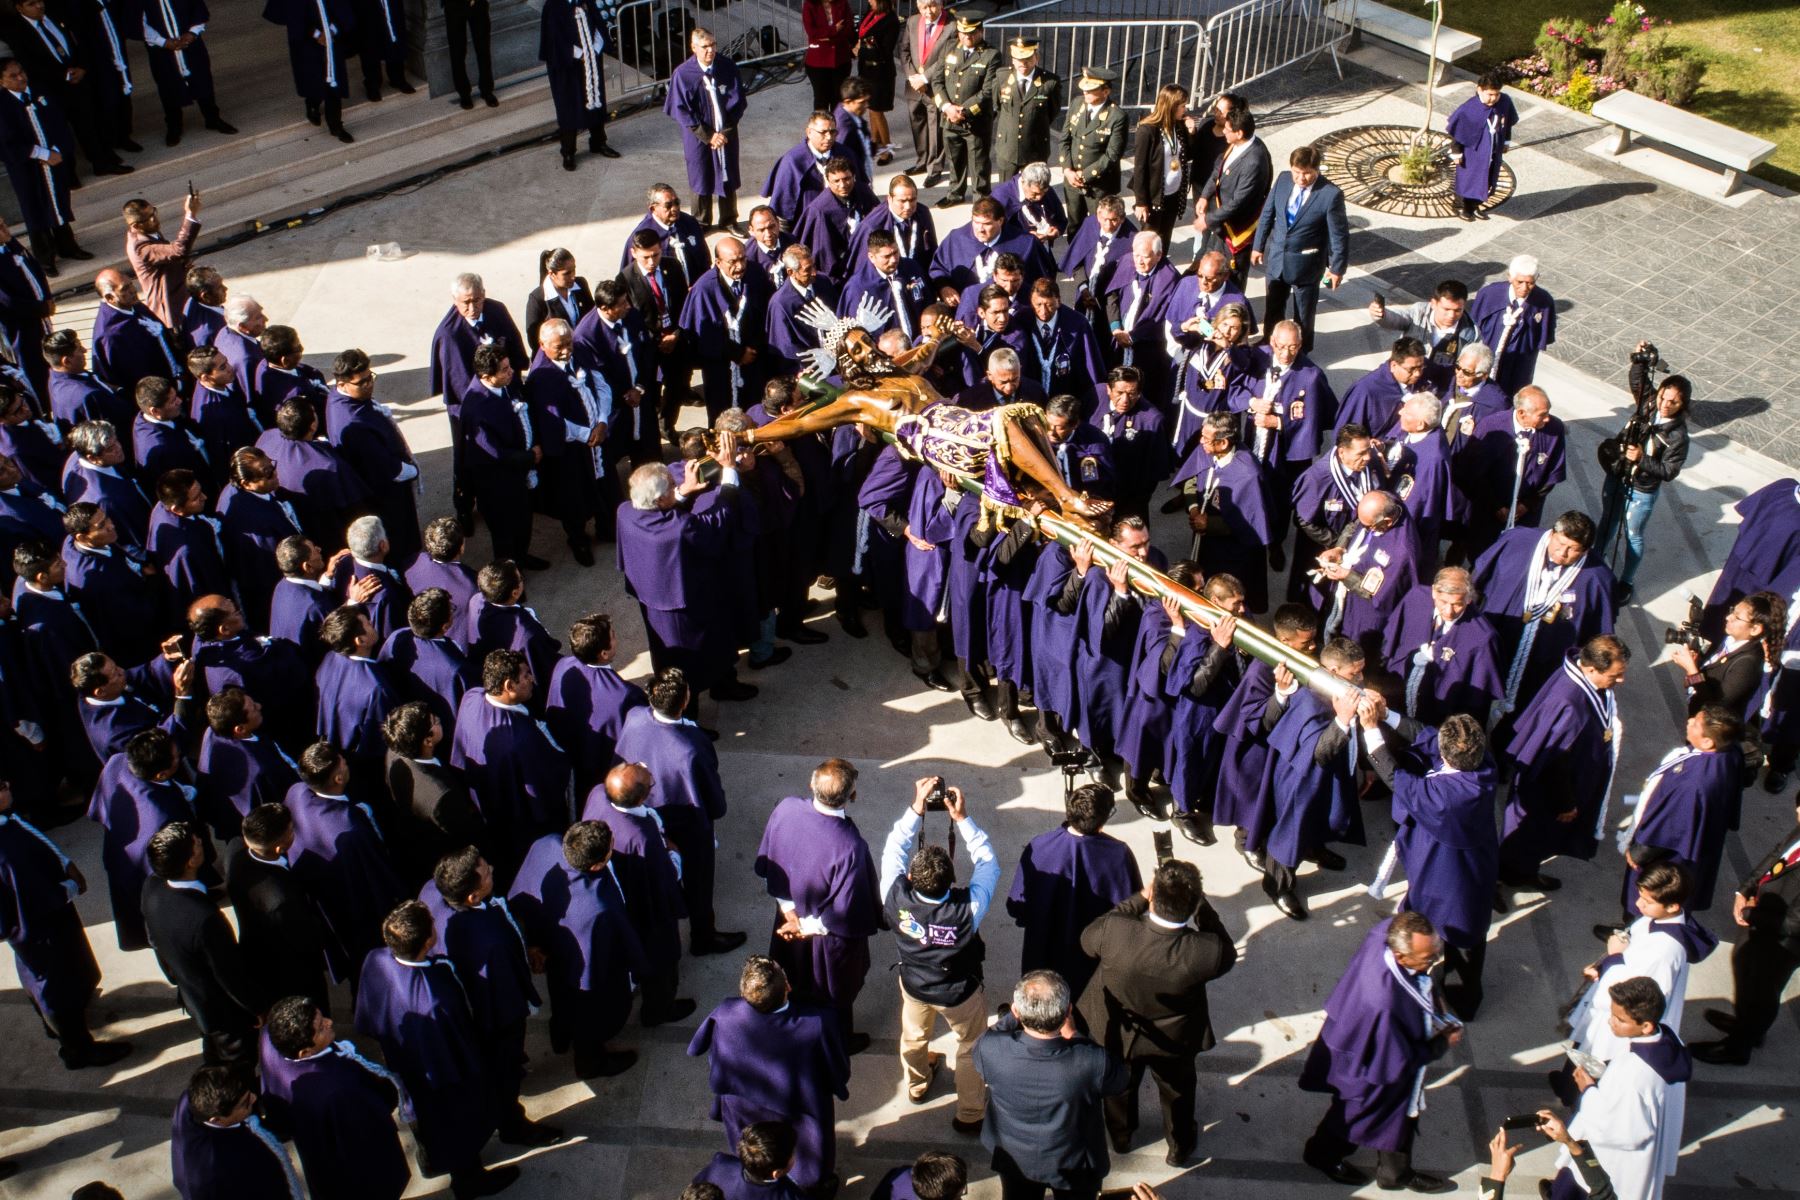 Ica celebra hoy la tradicional procesión del Señor de Luren, la imagen más venerada del catolicismo en Ica, una manifestación religiosa que congrega a miles de devotos. Foto: Genry Emerson Bautista